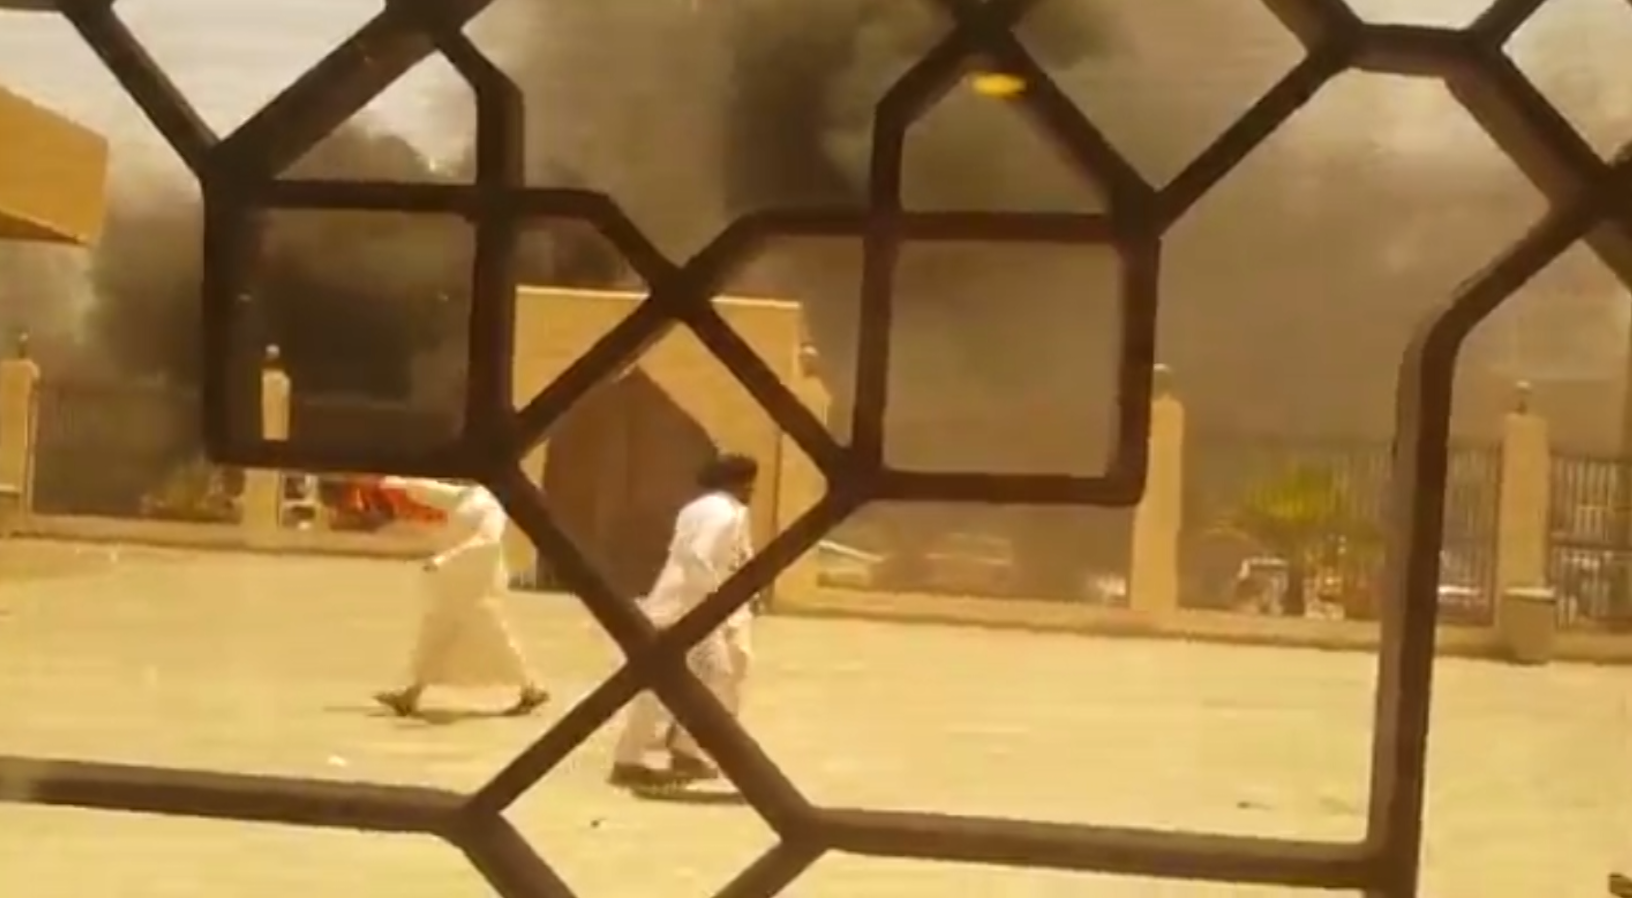 شاهد.. لحظة وقوع تفجير انتحاري استهدف مسجدا للشيعة بالدمام شرق السعودية - CNNArabic.com